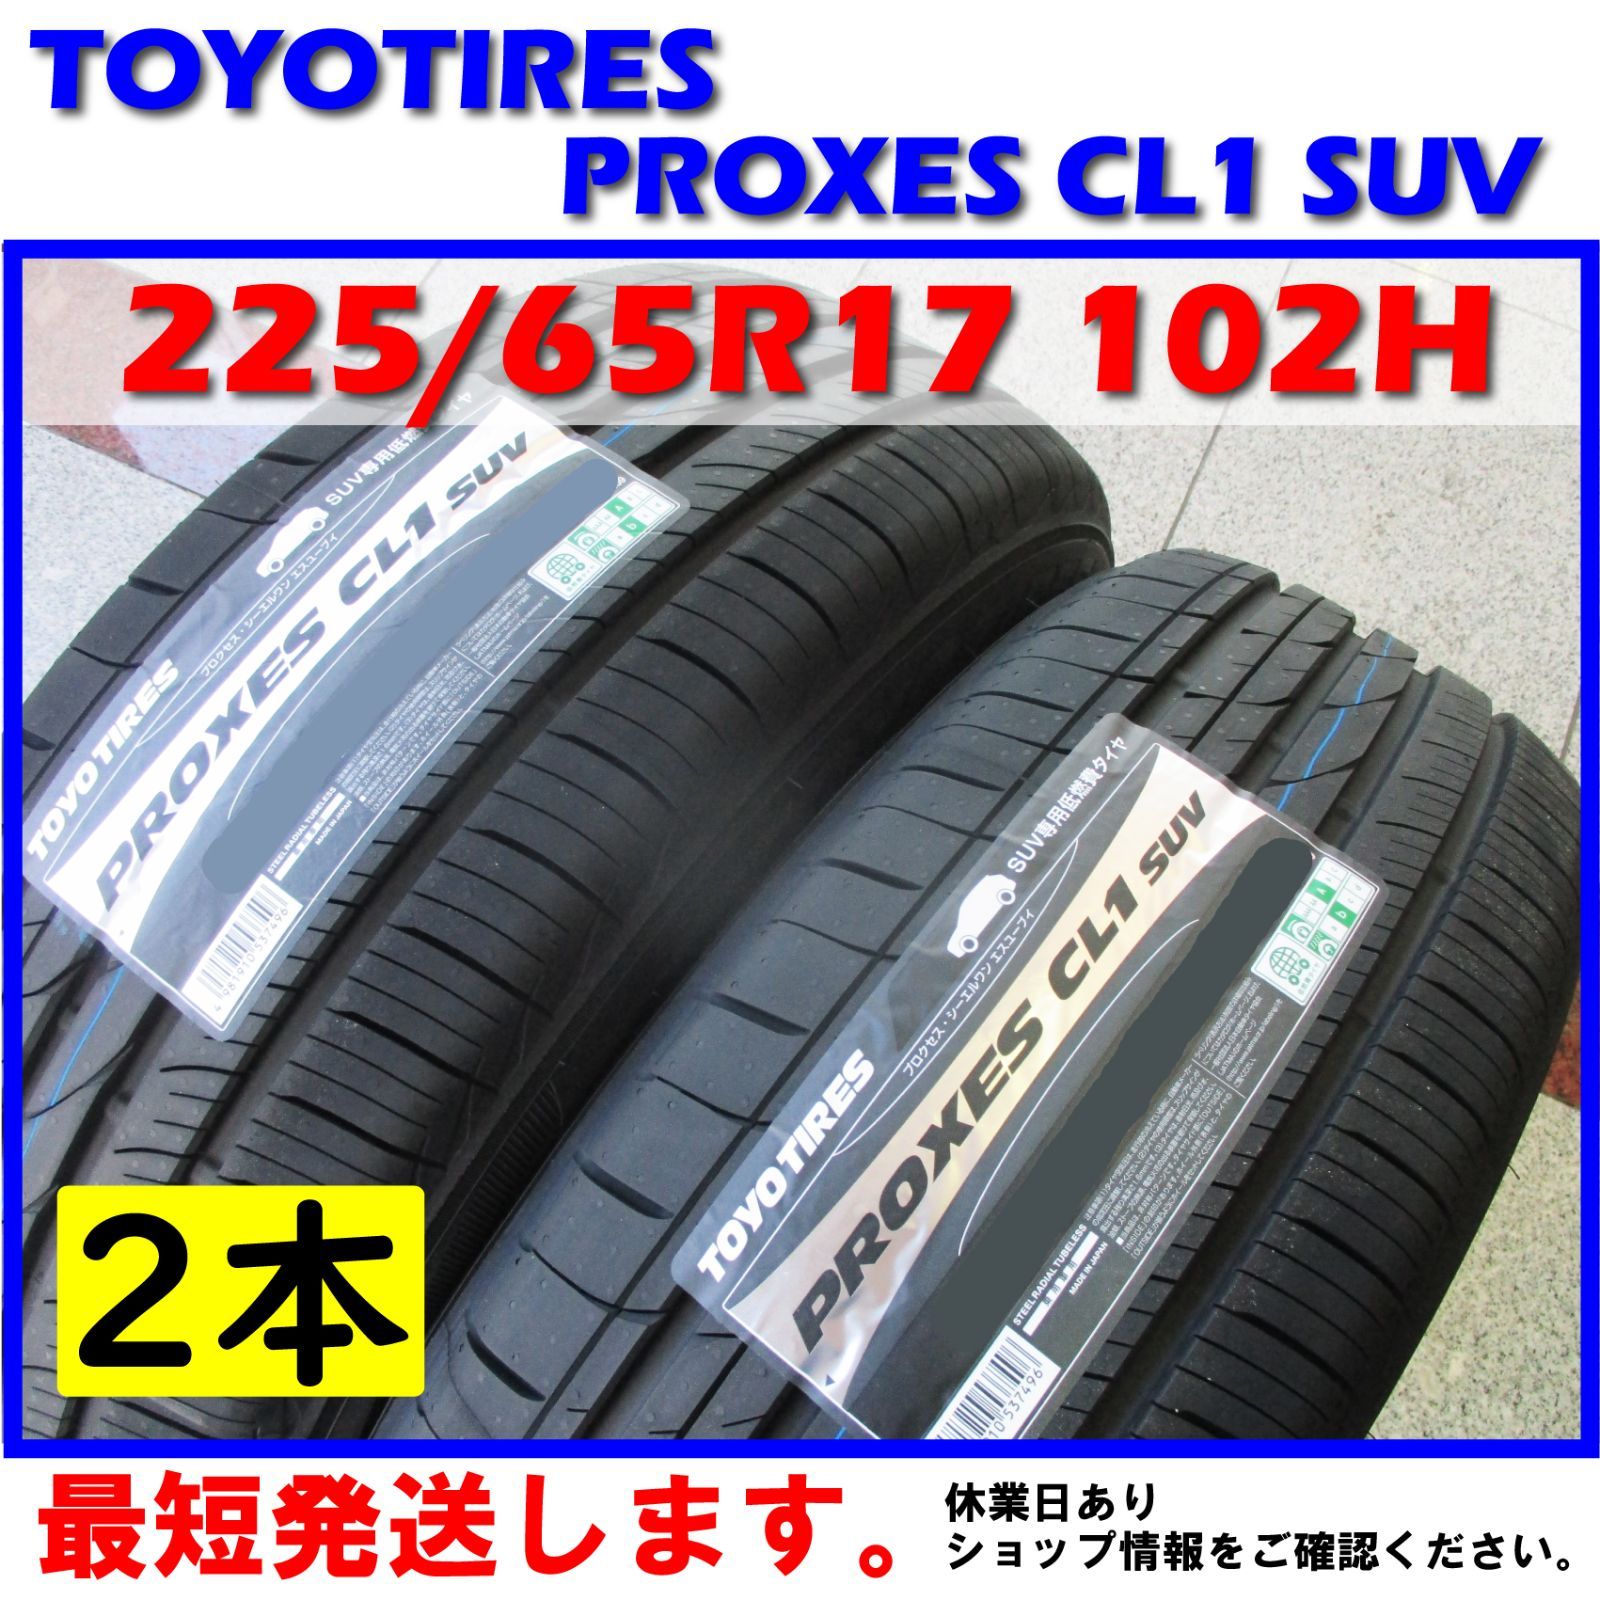 トーヨータイヤ PROXES CL1 SUV 225 65R17 102H サマータイヤ 4本セット - 9